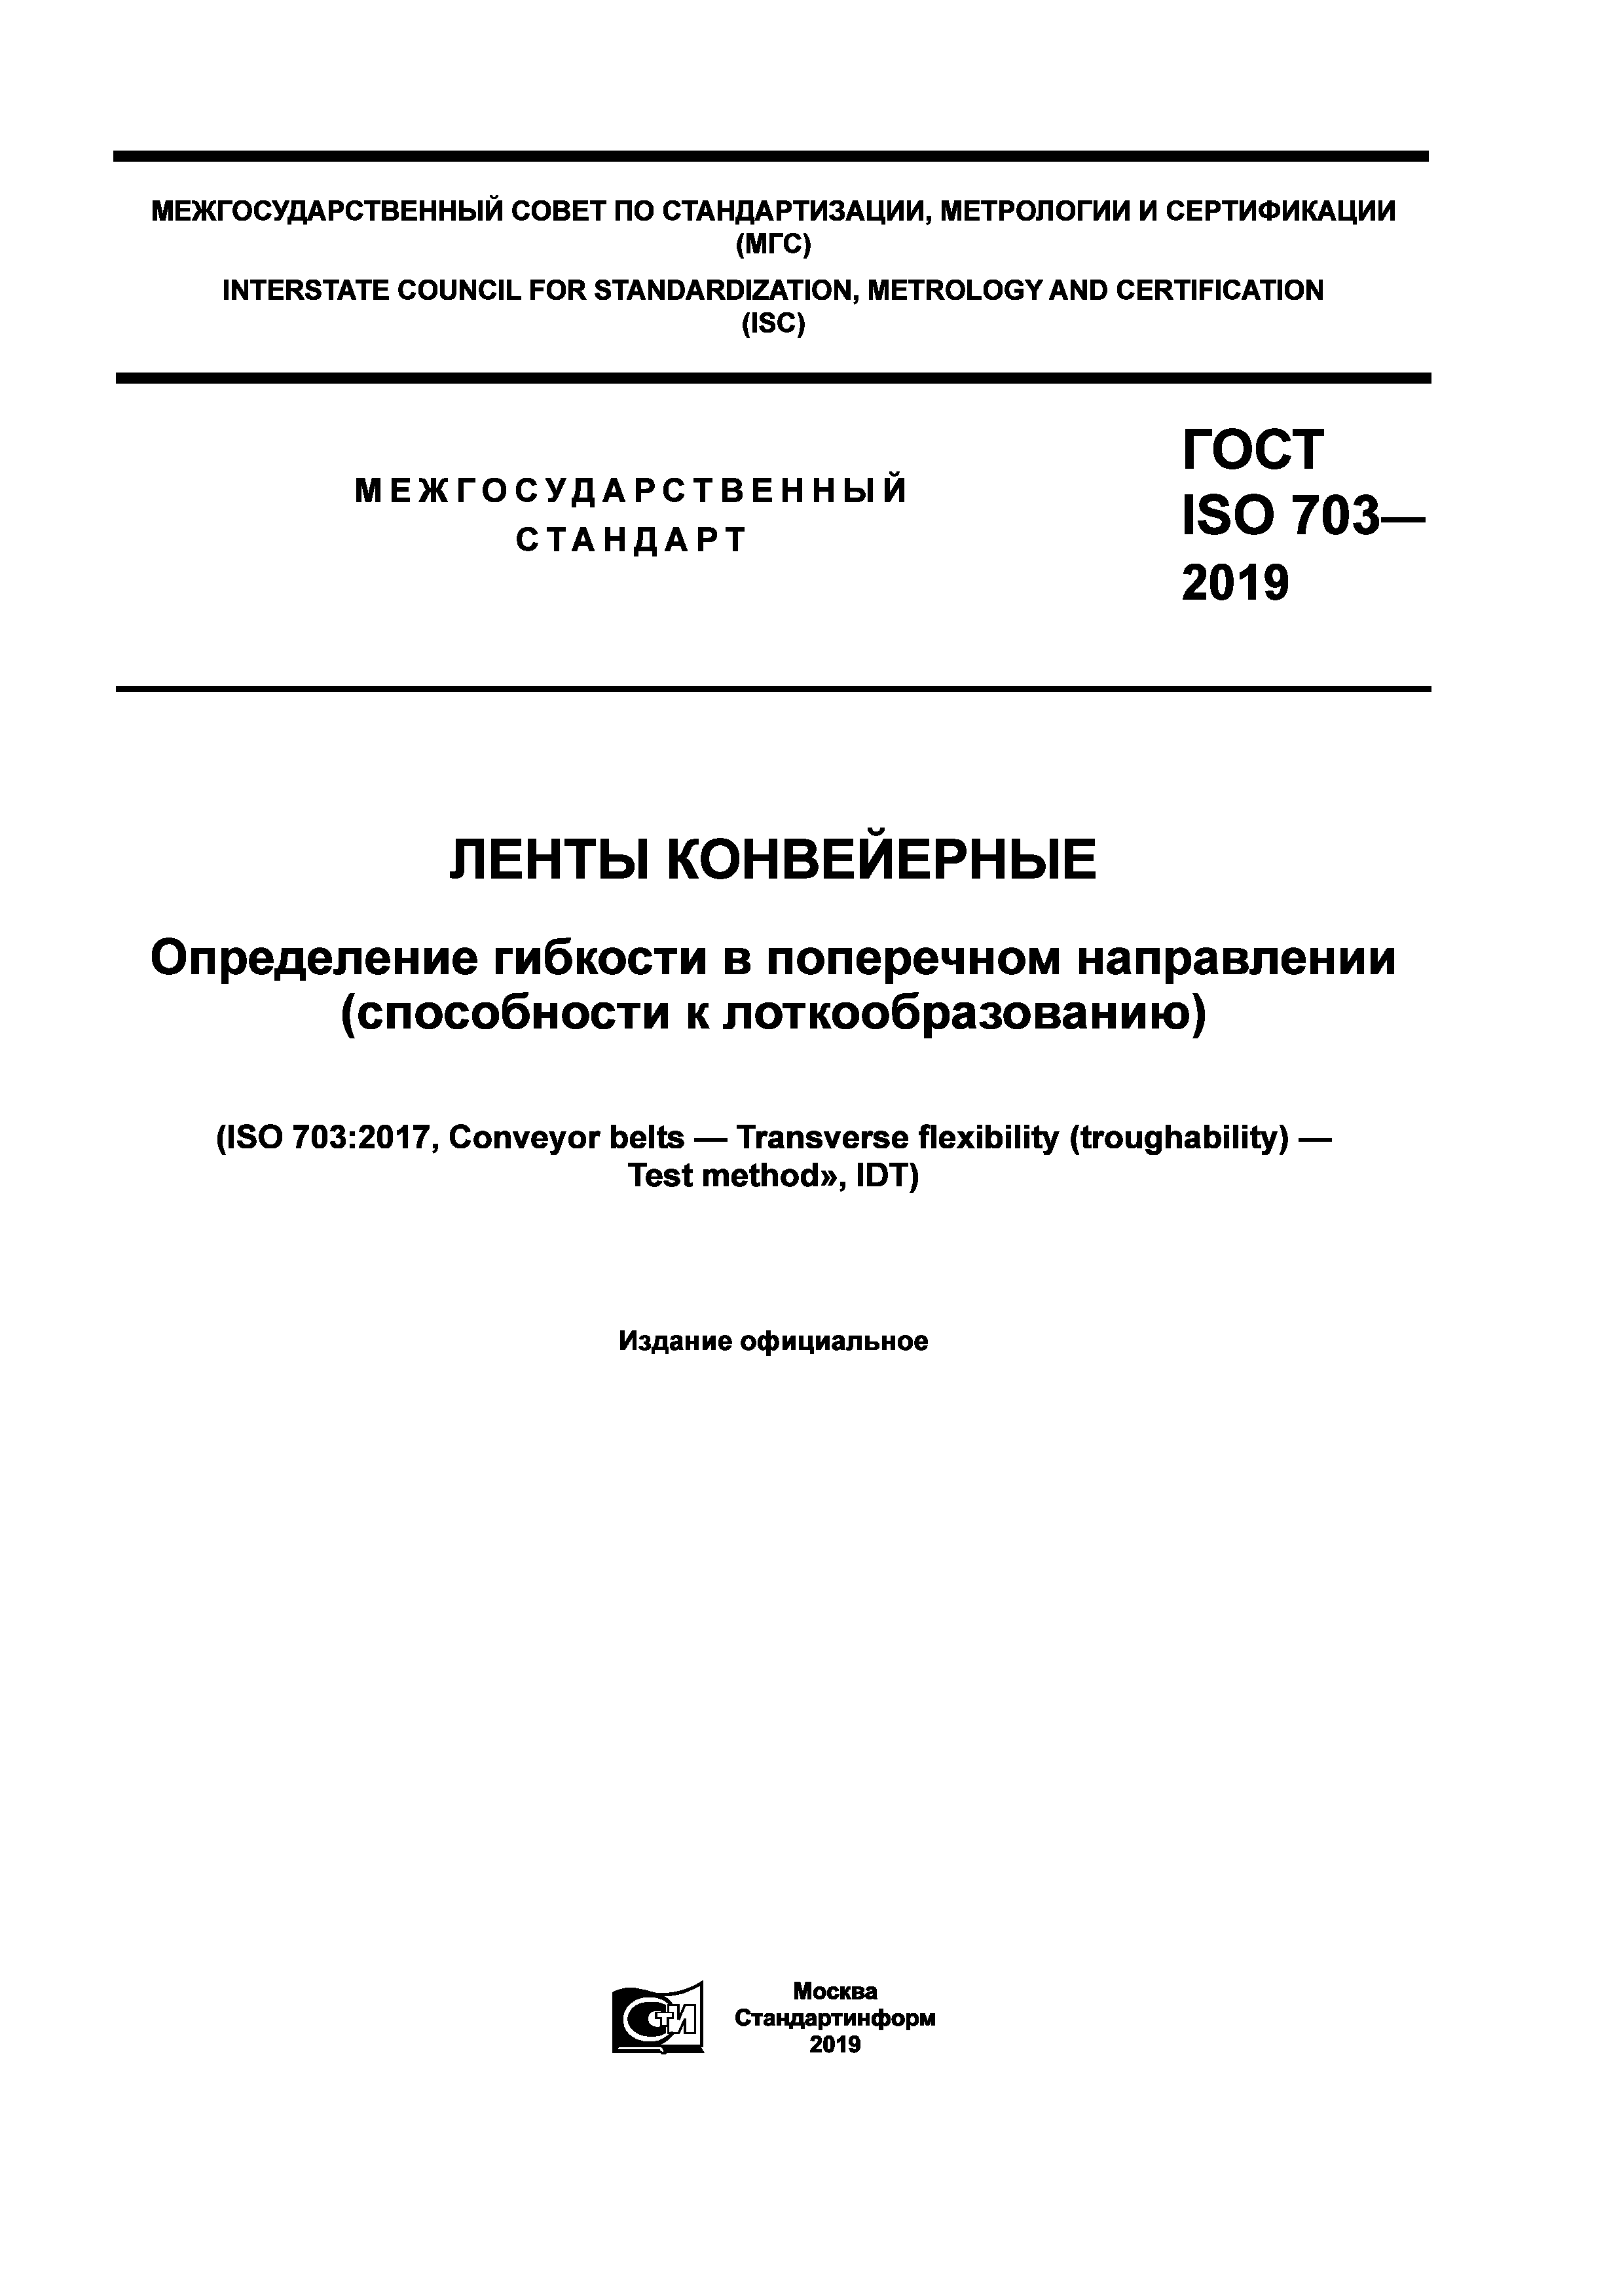 ГОСТ ISO 703-2019